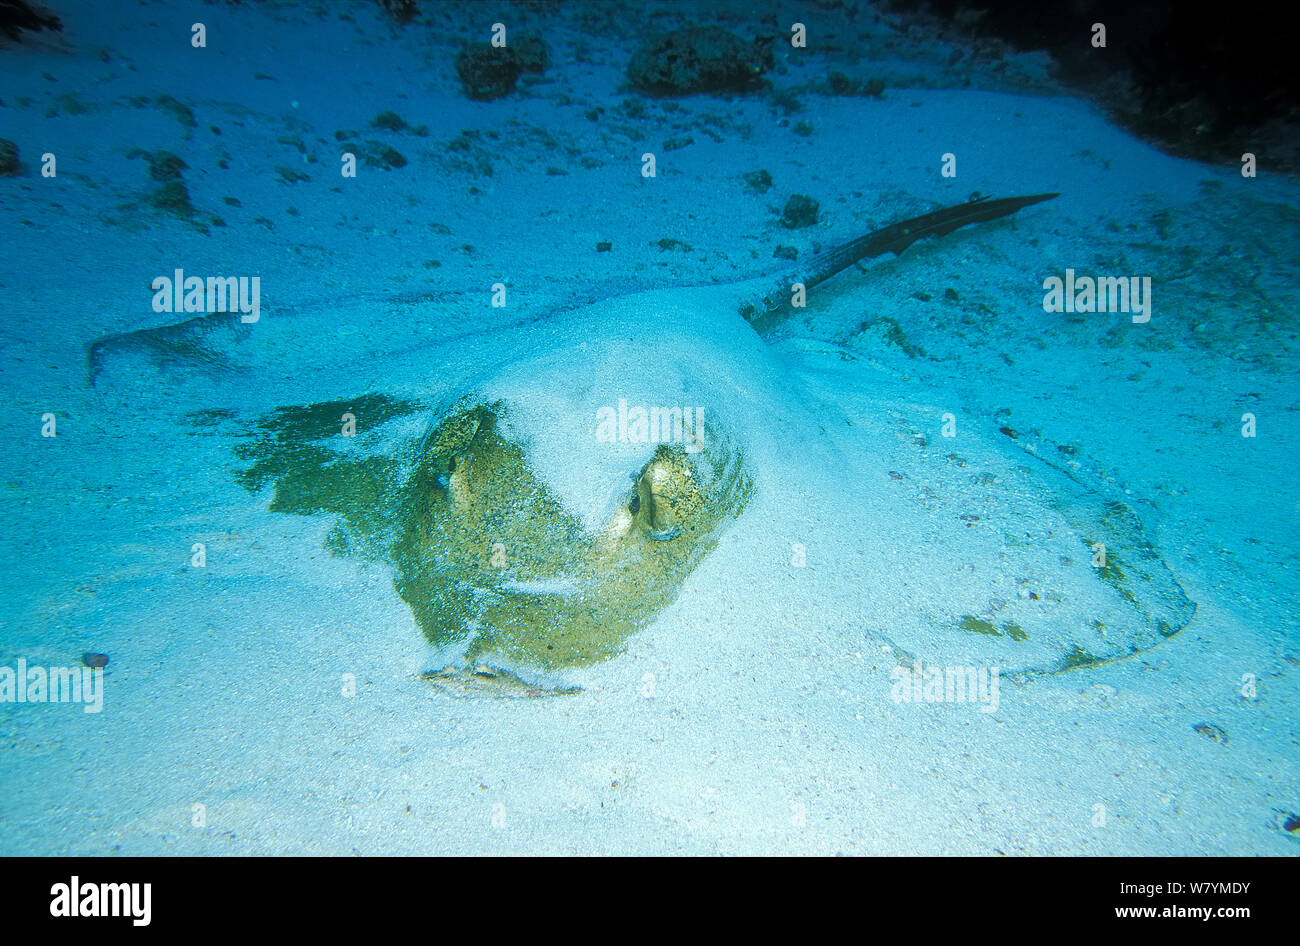 Cowtail stingray (Pastinachus sephen) demi-enterré dans le sable, Maldives, océan Indien. Banque D'Images